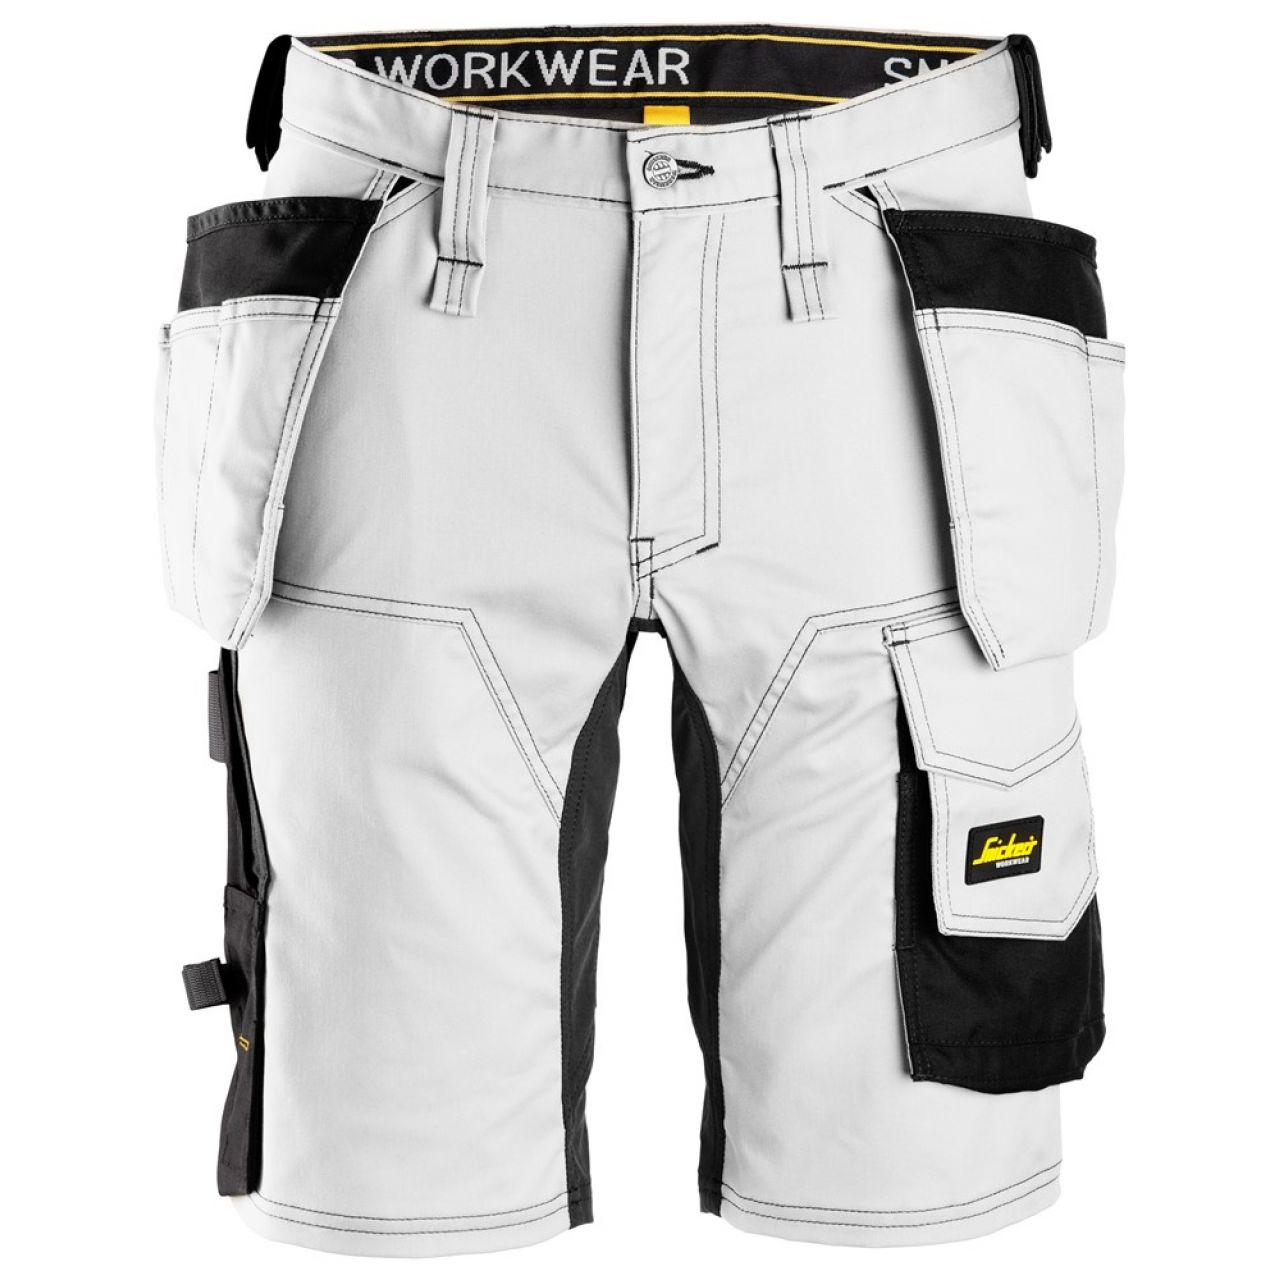 6141 Pantalones cortos de trabajo elásticos con bolsillos flotantes AllroundWork blanco-negro talla 54